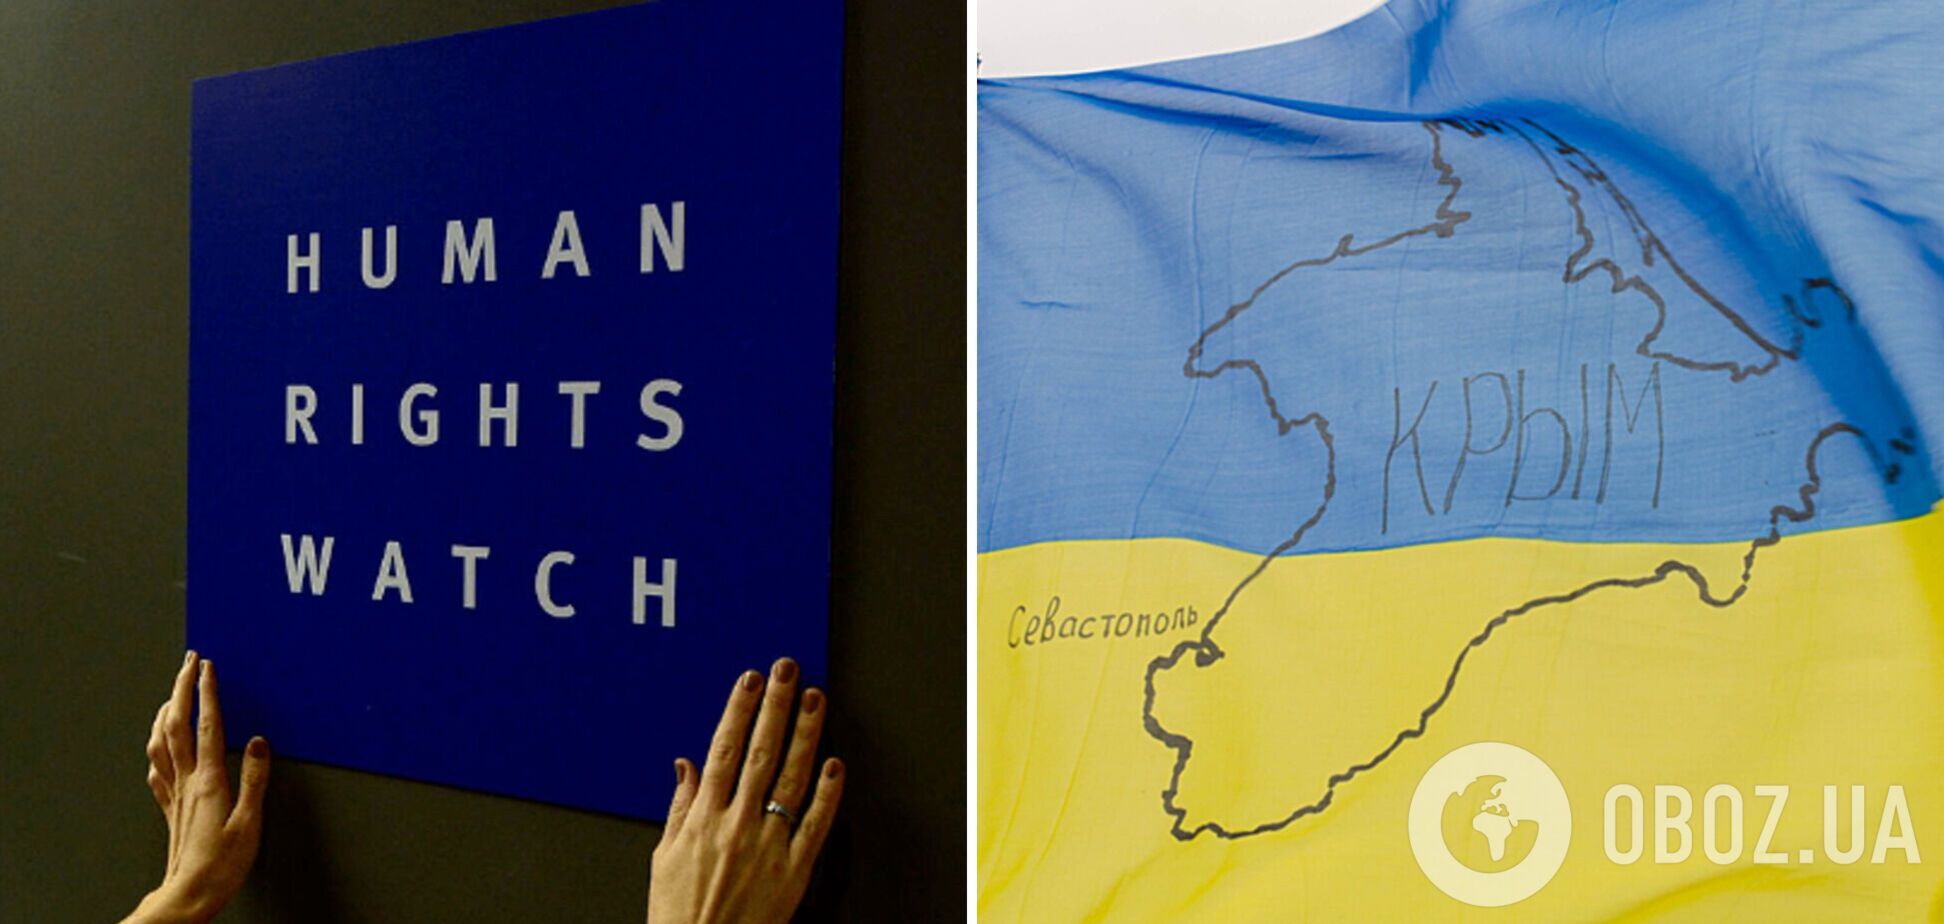 Правозащитники из Human Rights Watch проиллюстрировали картой Украины без Крыма скандальный отчет о применении противопехотных мин. Фото